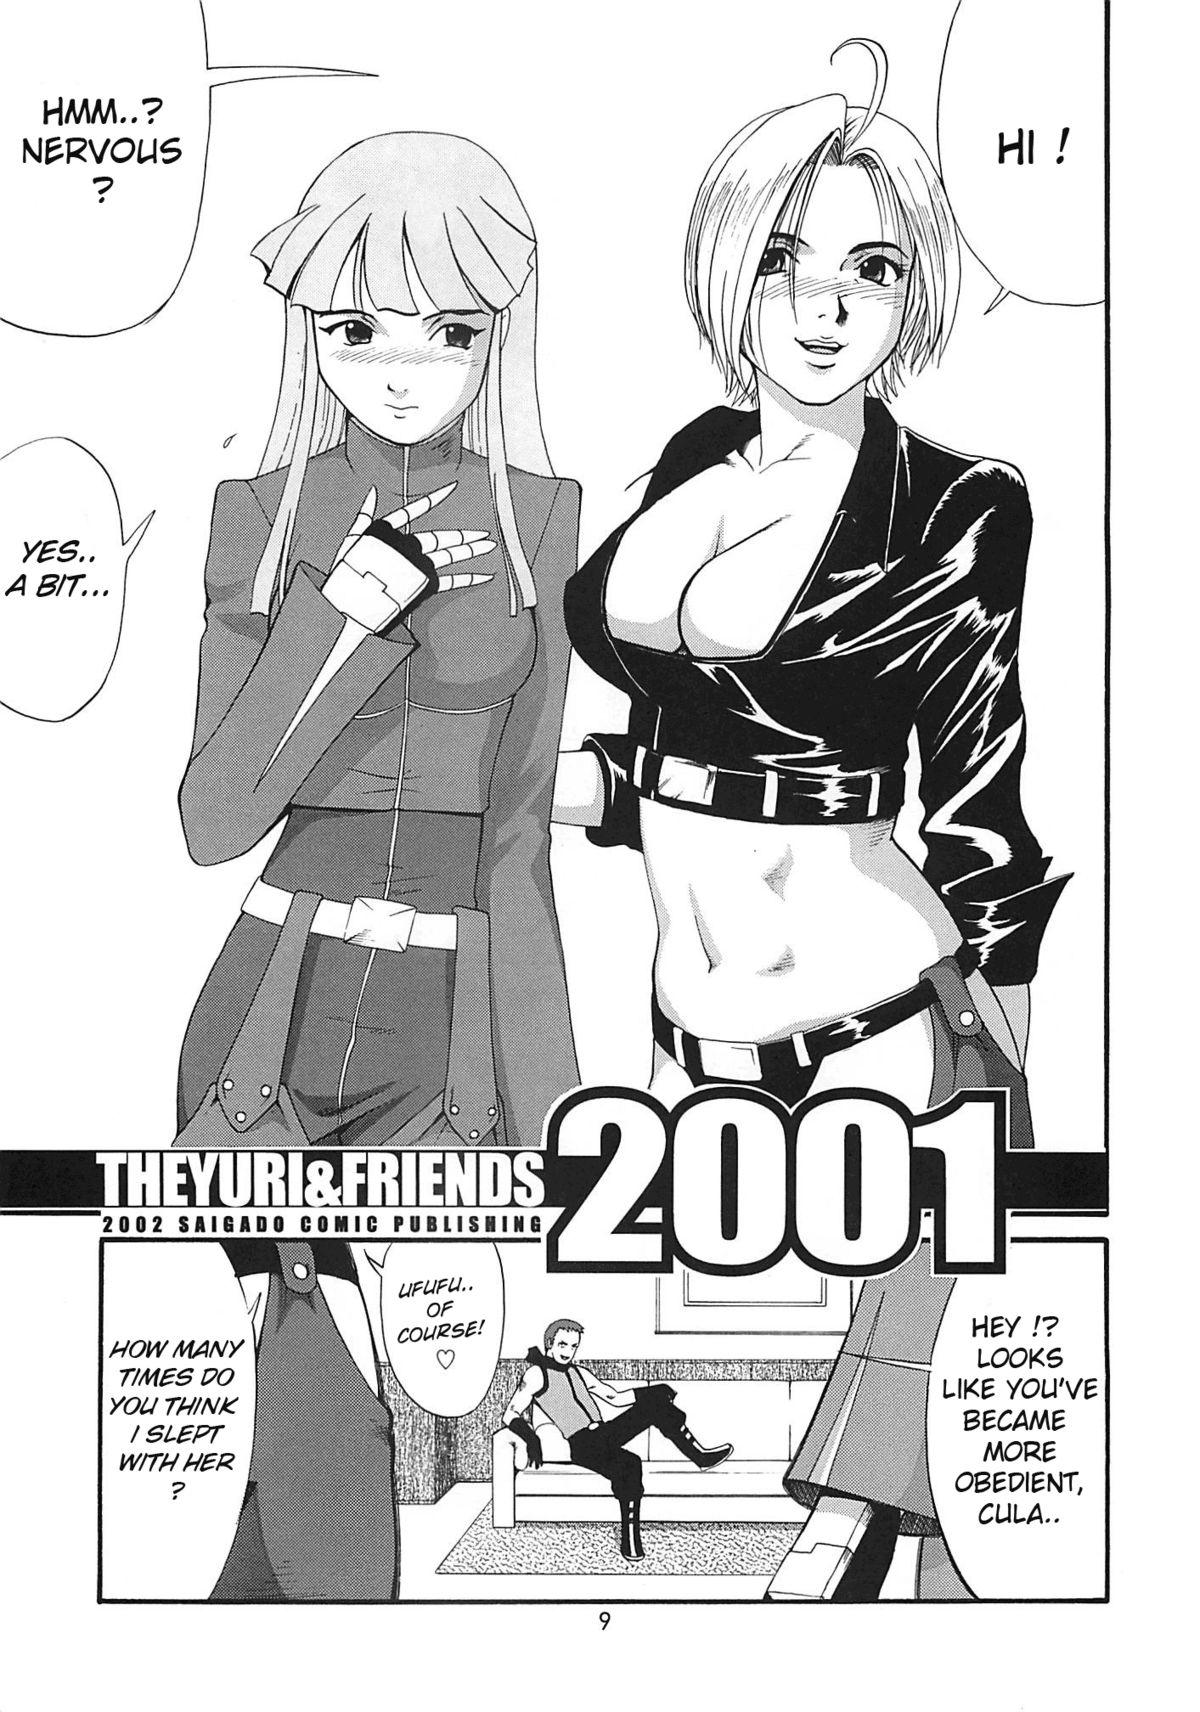 The Yuri & Friends 2001 8